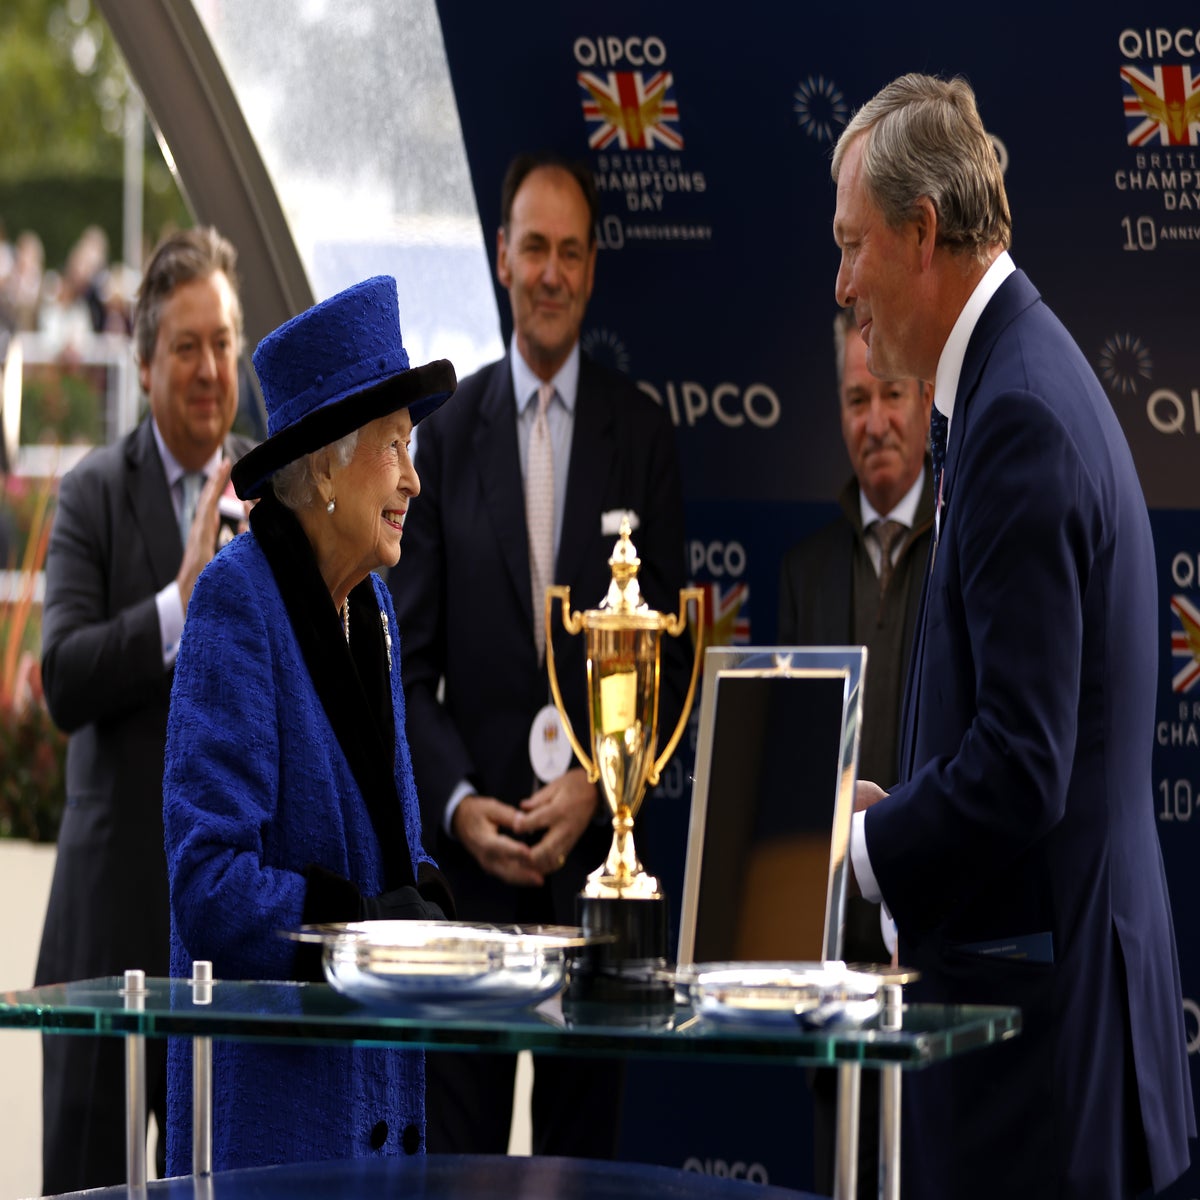 The Queen and Queen Mother present the De Beers diamond trophy to